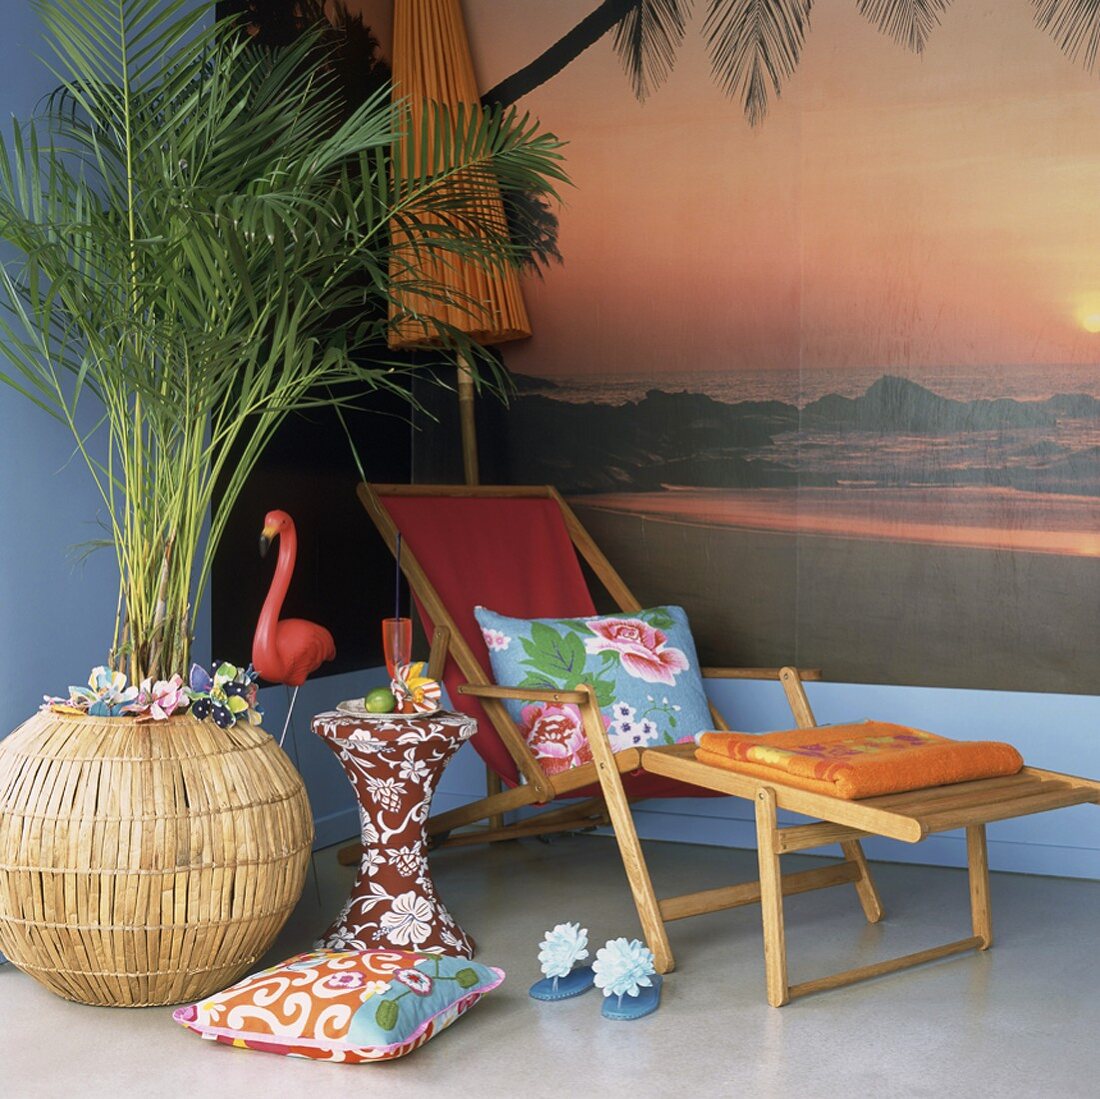 Zimmerecke mit Urlaubsfeeling durch eine Fototapete, einem Liegestuhl und einer großen Zimmerpalme